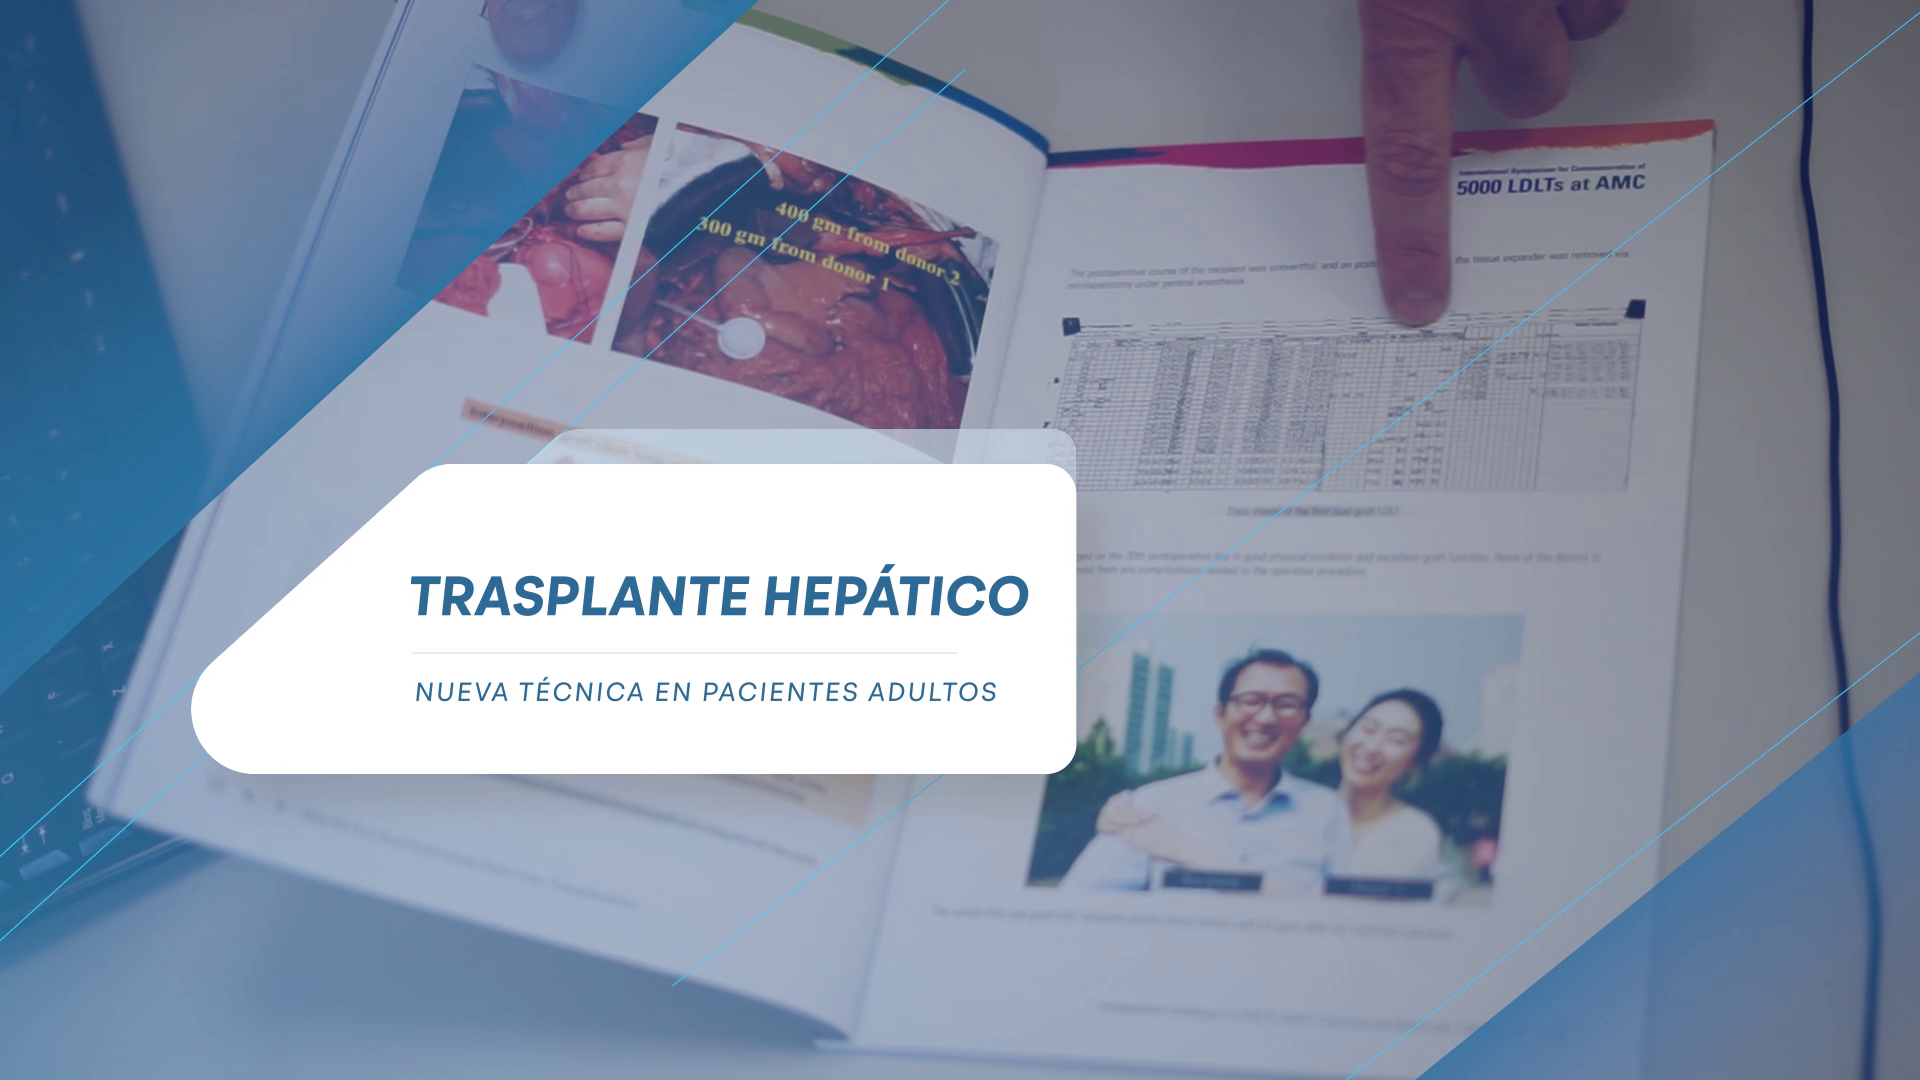 FOTO: Hospital Privado suma una técnica de alta complejidad para trasplantes hepáticos